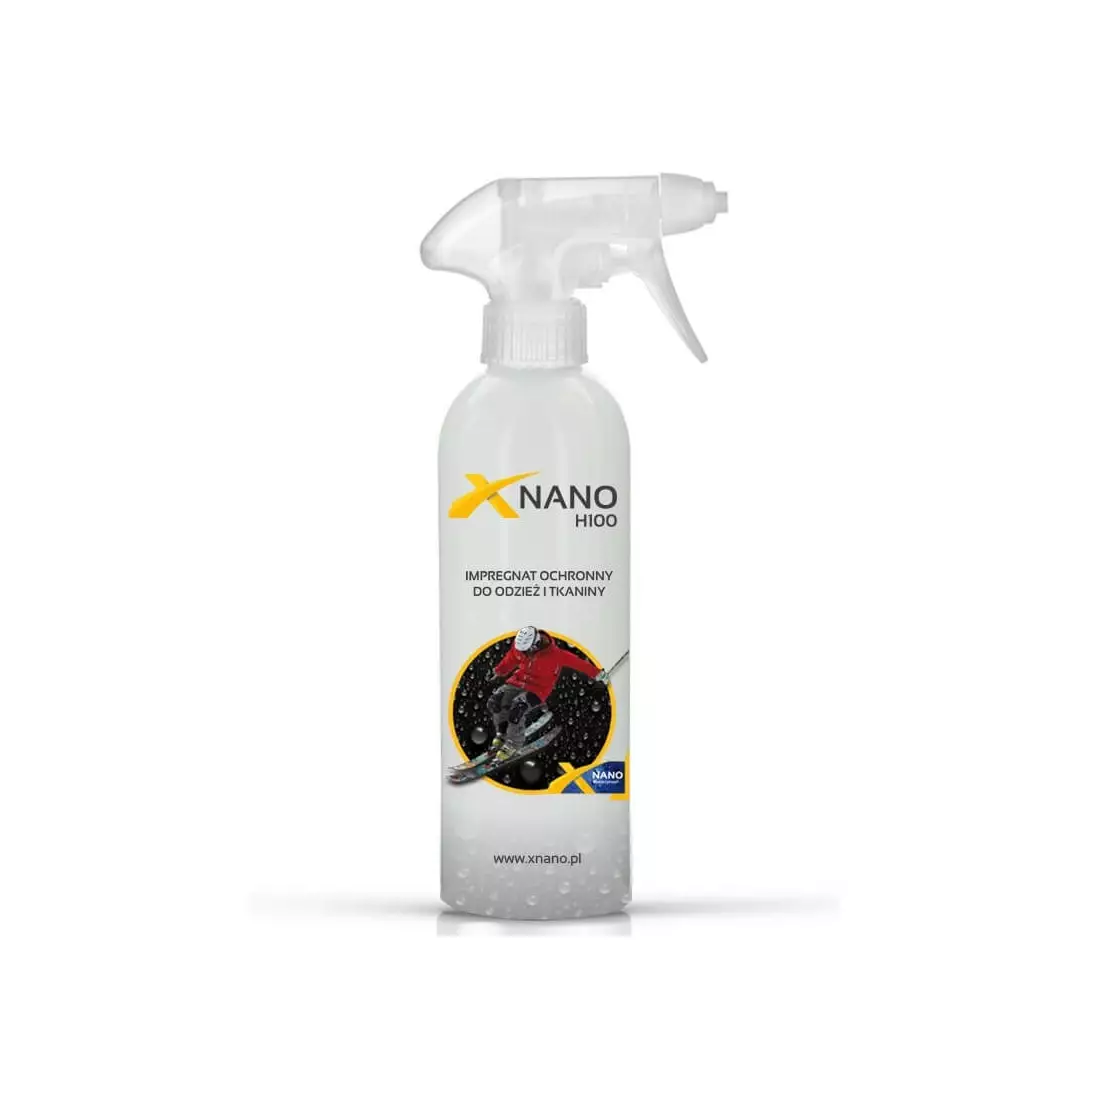 NANOBIZ - XNANO - H100 Védő impregnálás ruházathoz és szövetekhez, űrtartalom: 250 ml